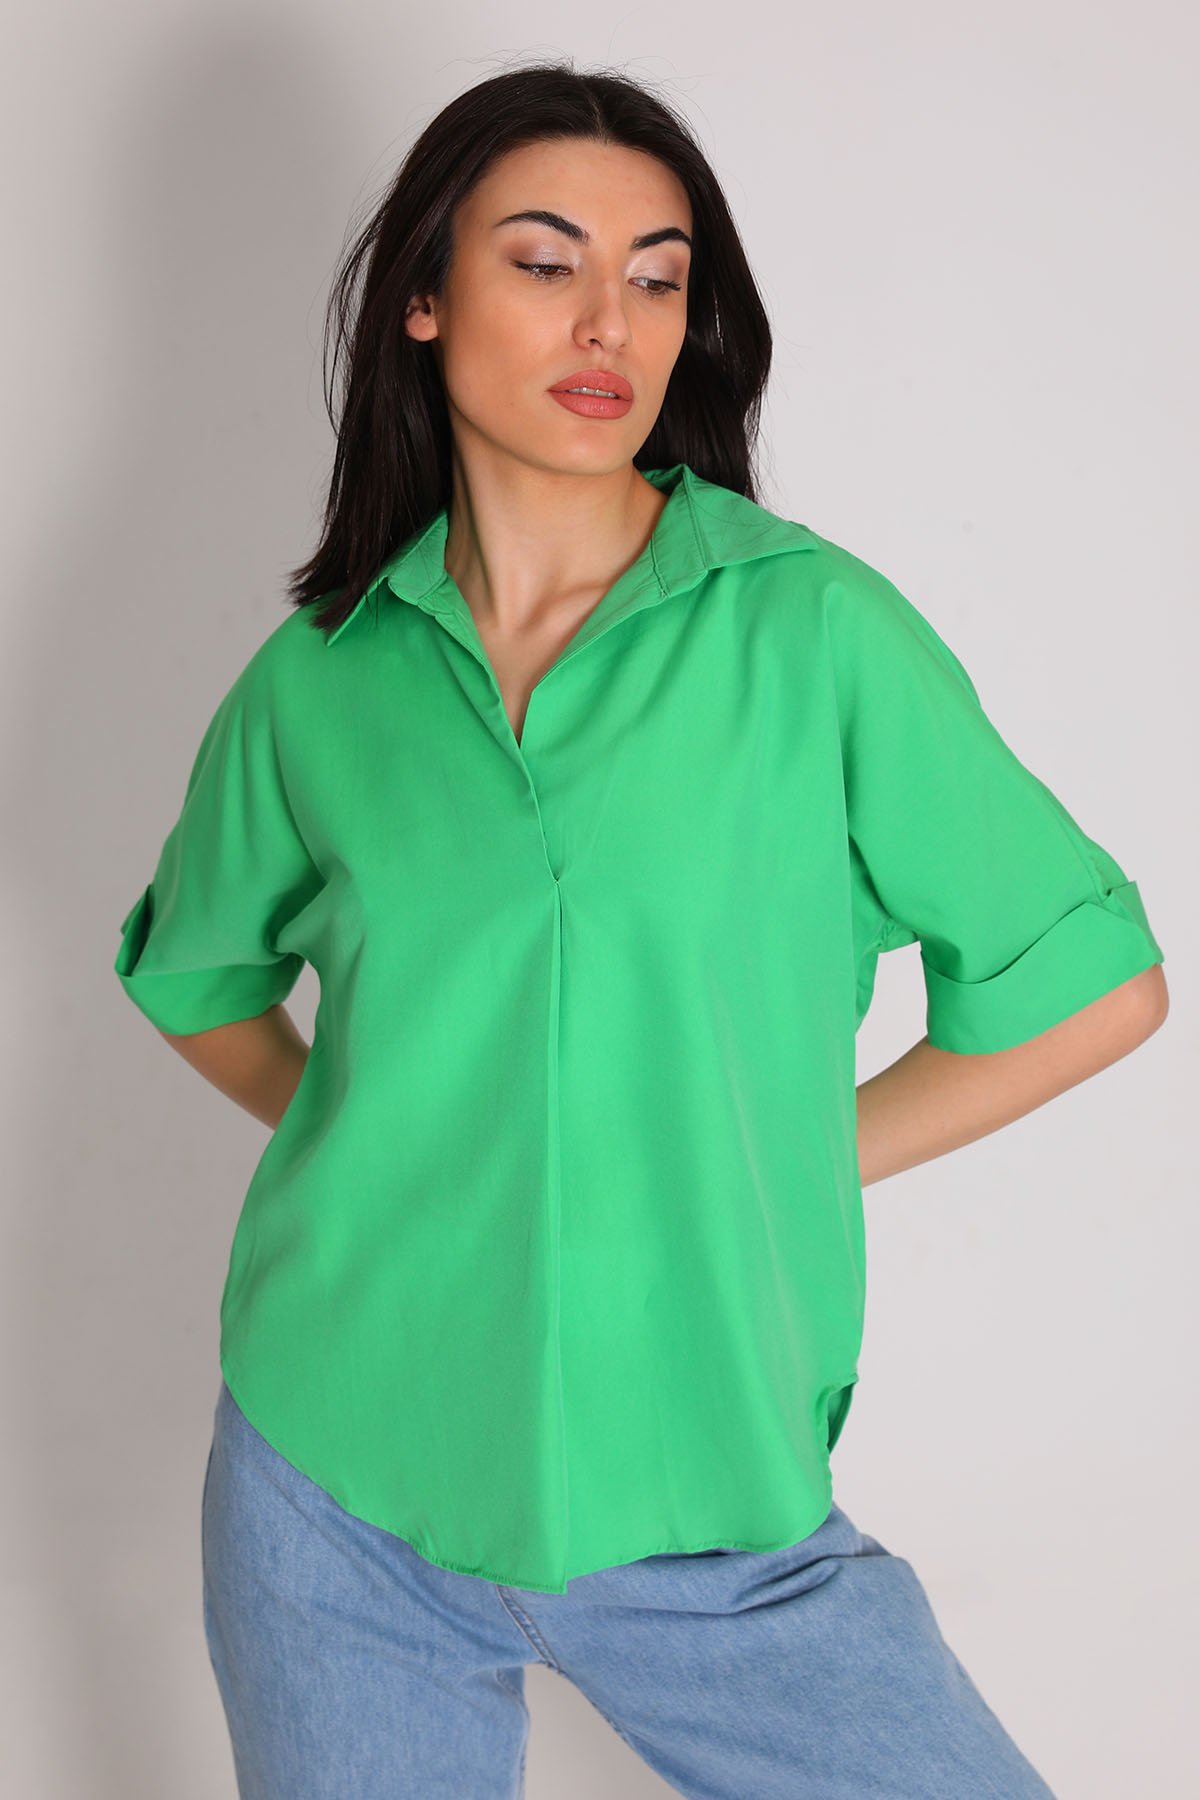 Kadın Gömlek Yaka Kısa Kollu Bluz Yeşil 496473 - tozlu.com